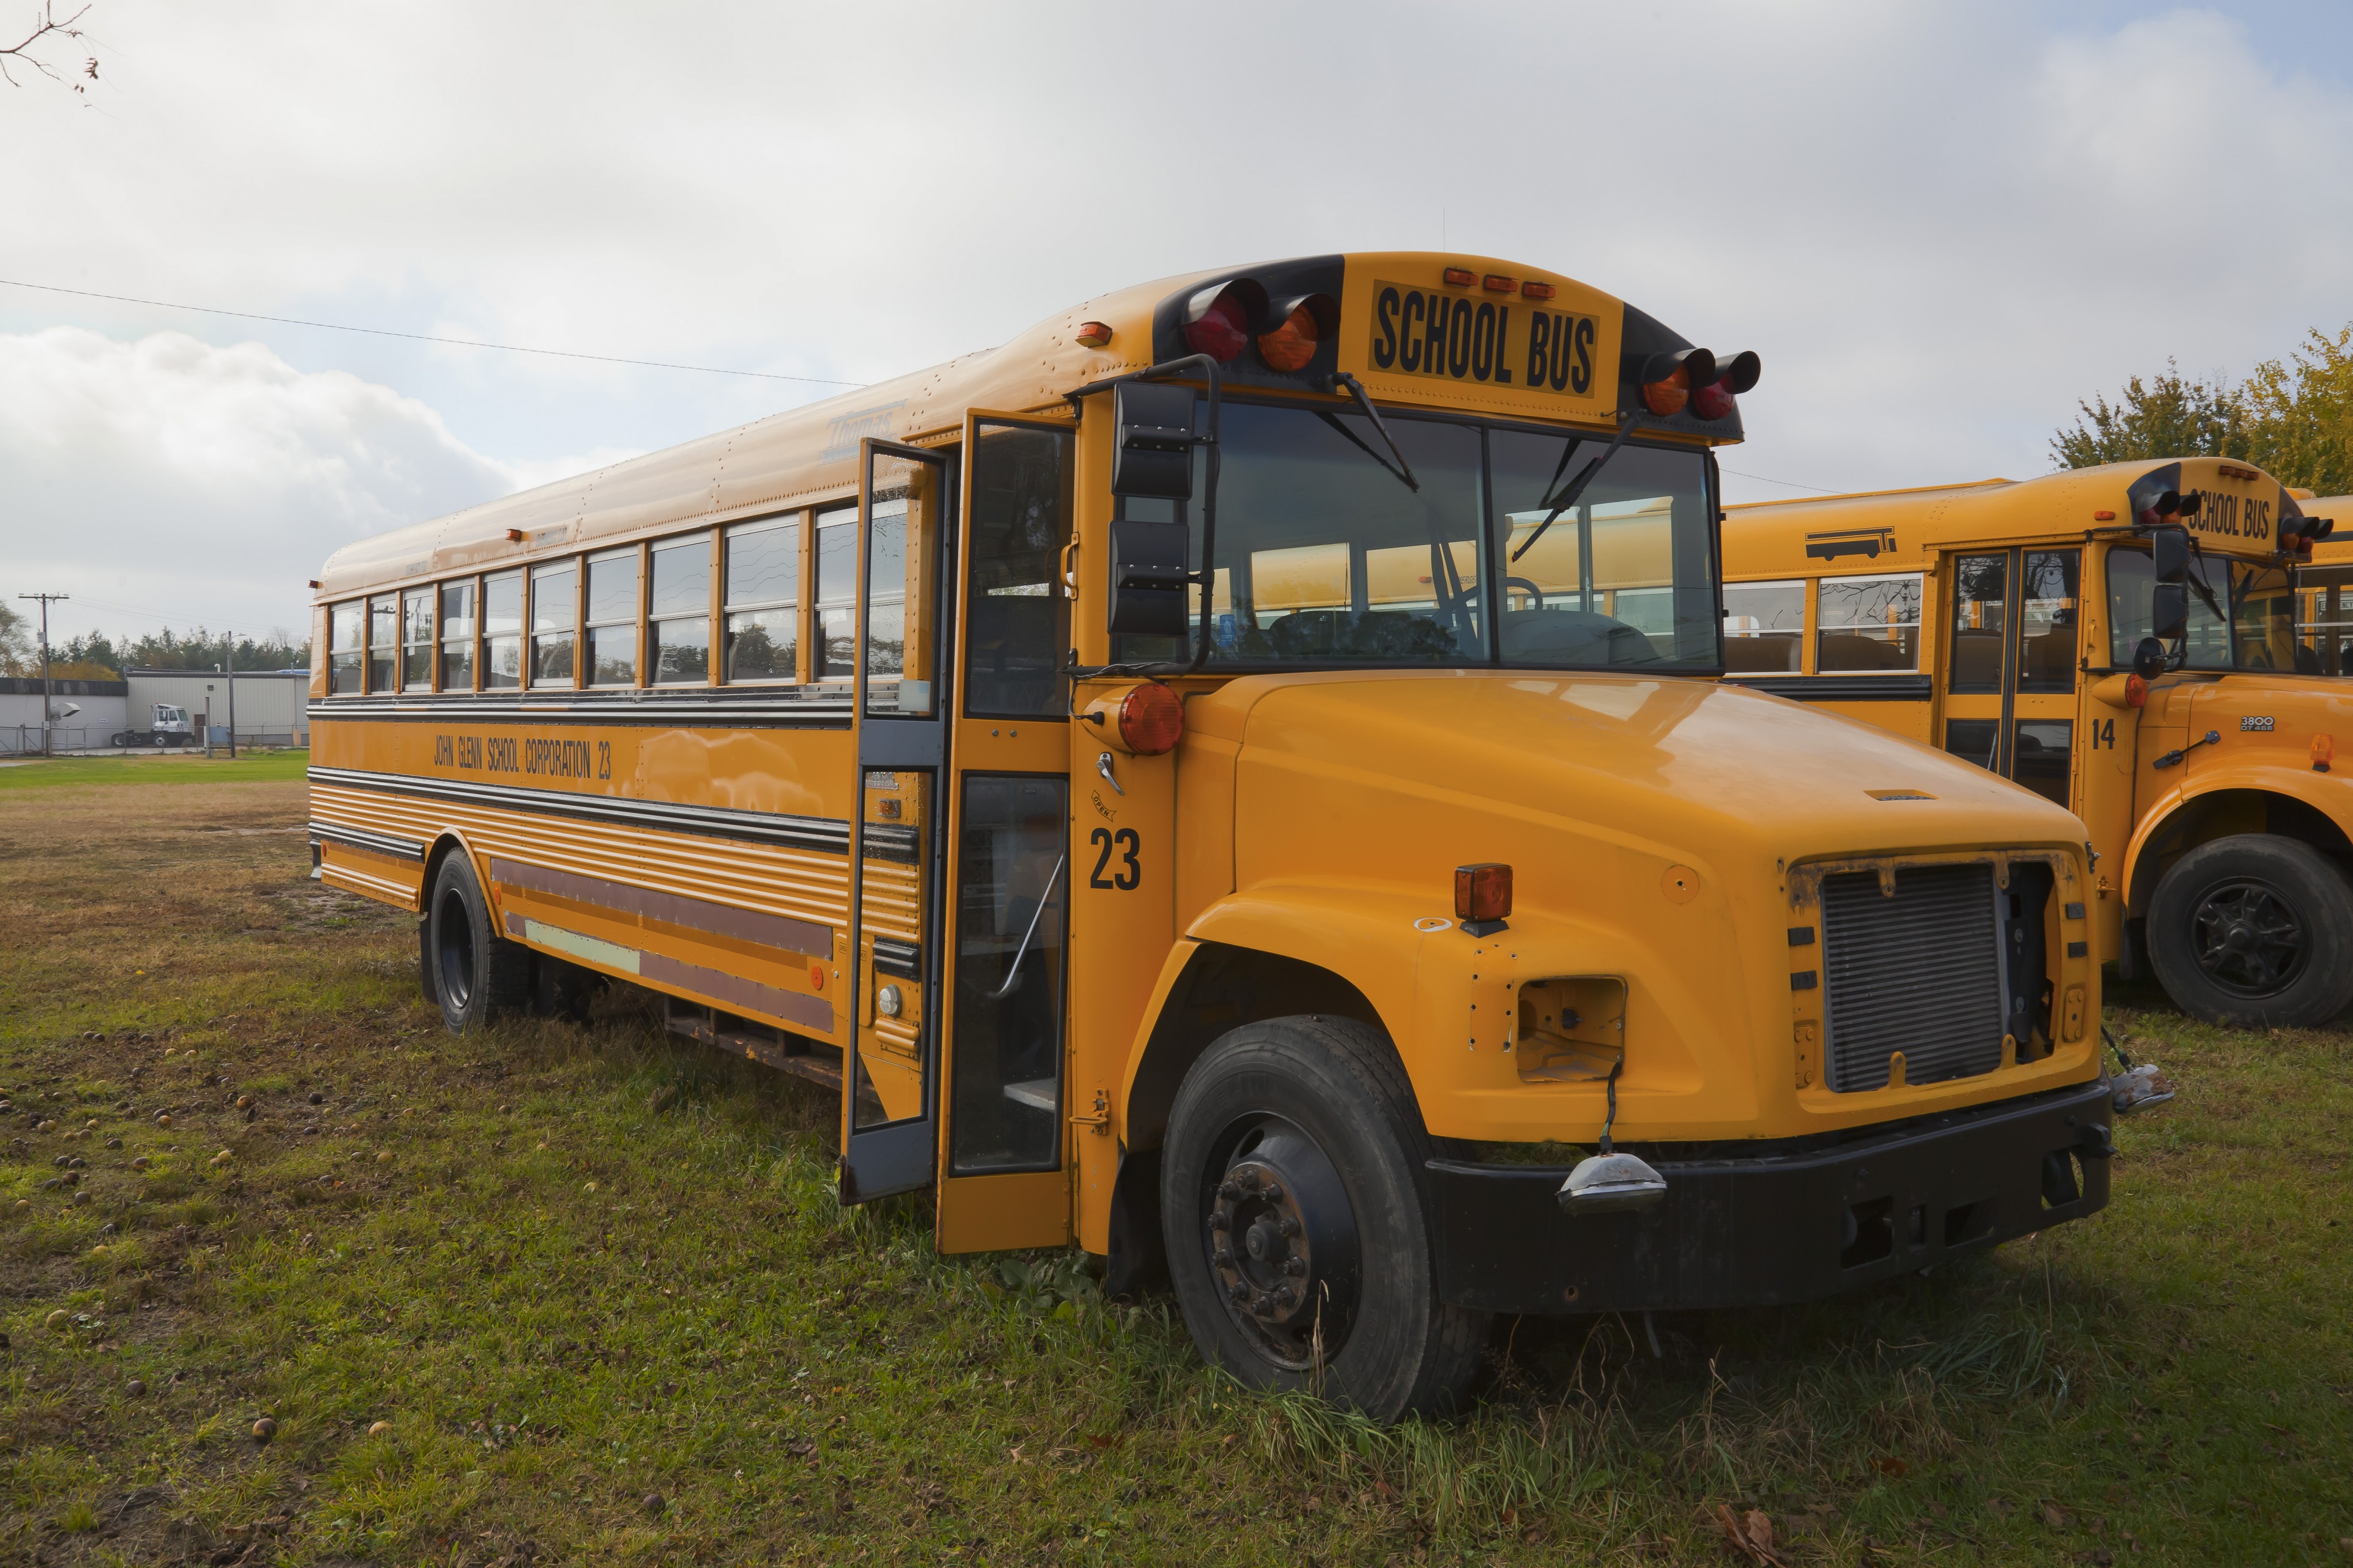 Autobús escolar, Walker, Indiana, Estados Unidos, 2012-10-20, DD 01